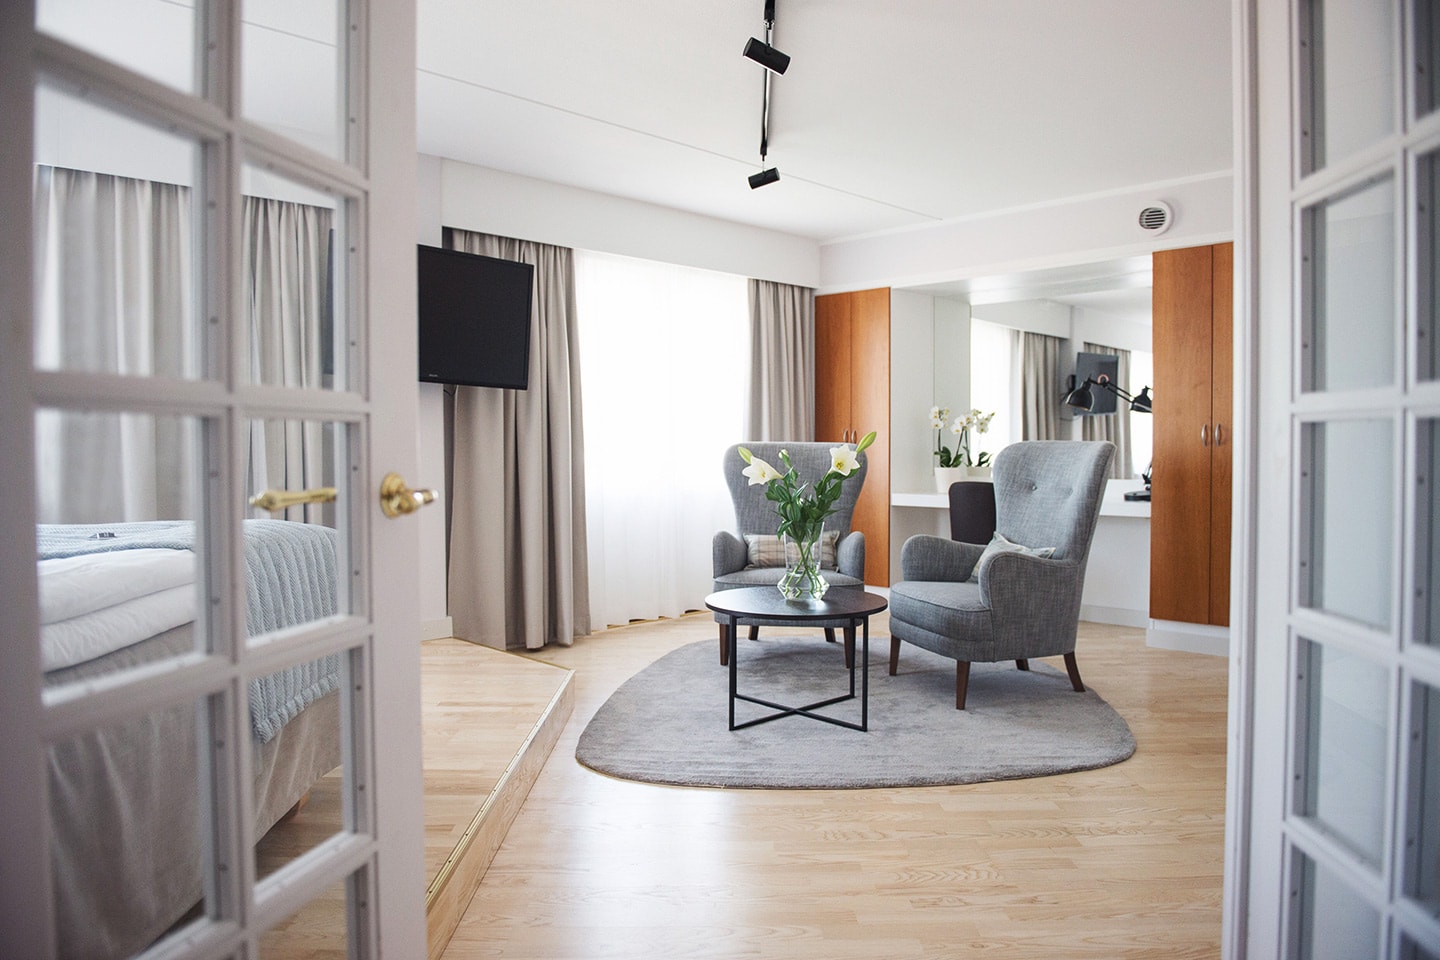 Övernattning på Quality Hotel Ekoxen i Linköping för 2 eller familj (3 av 17)